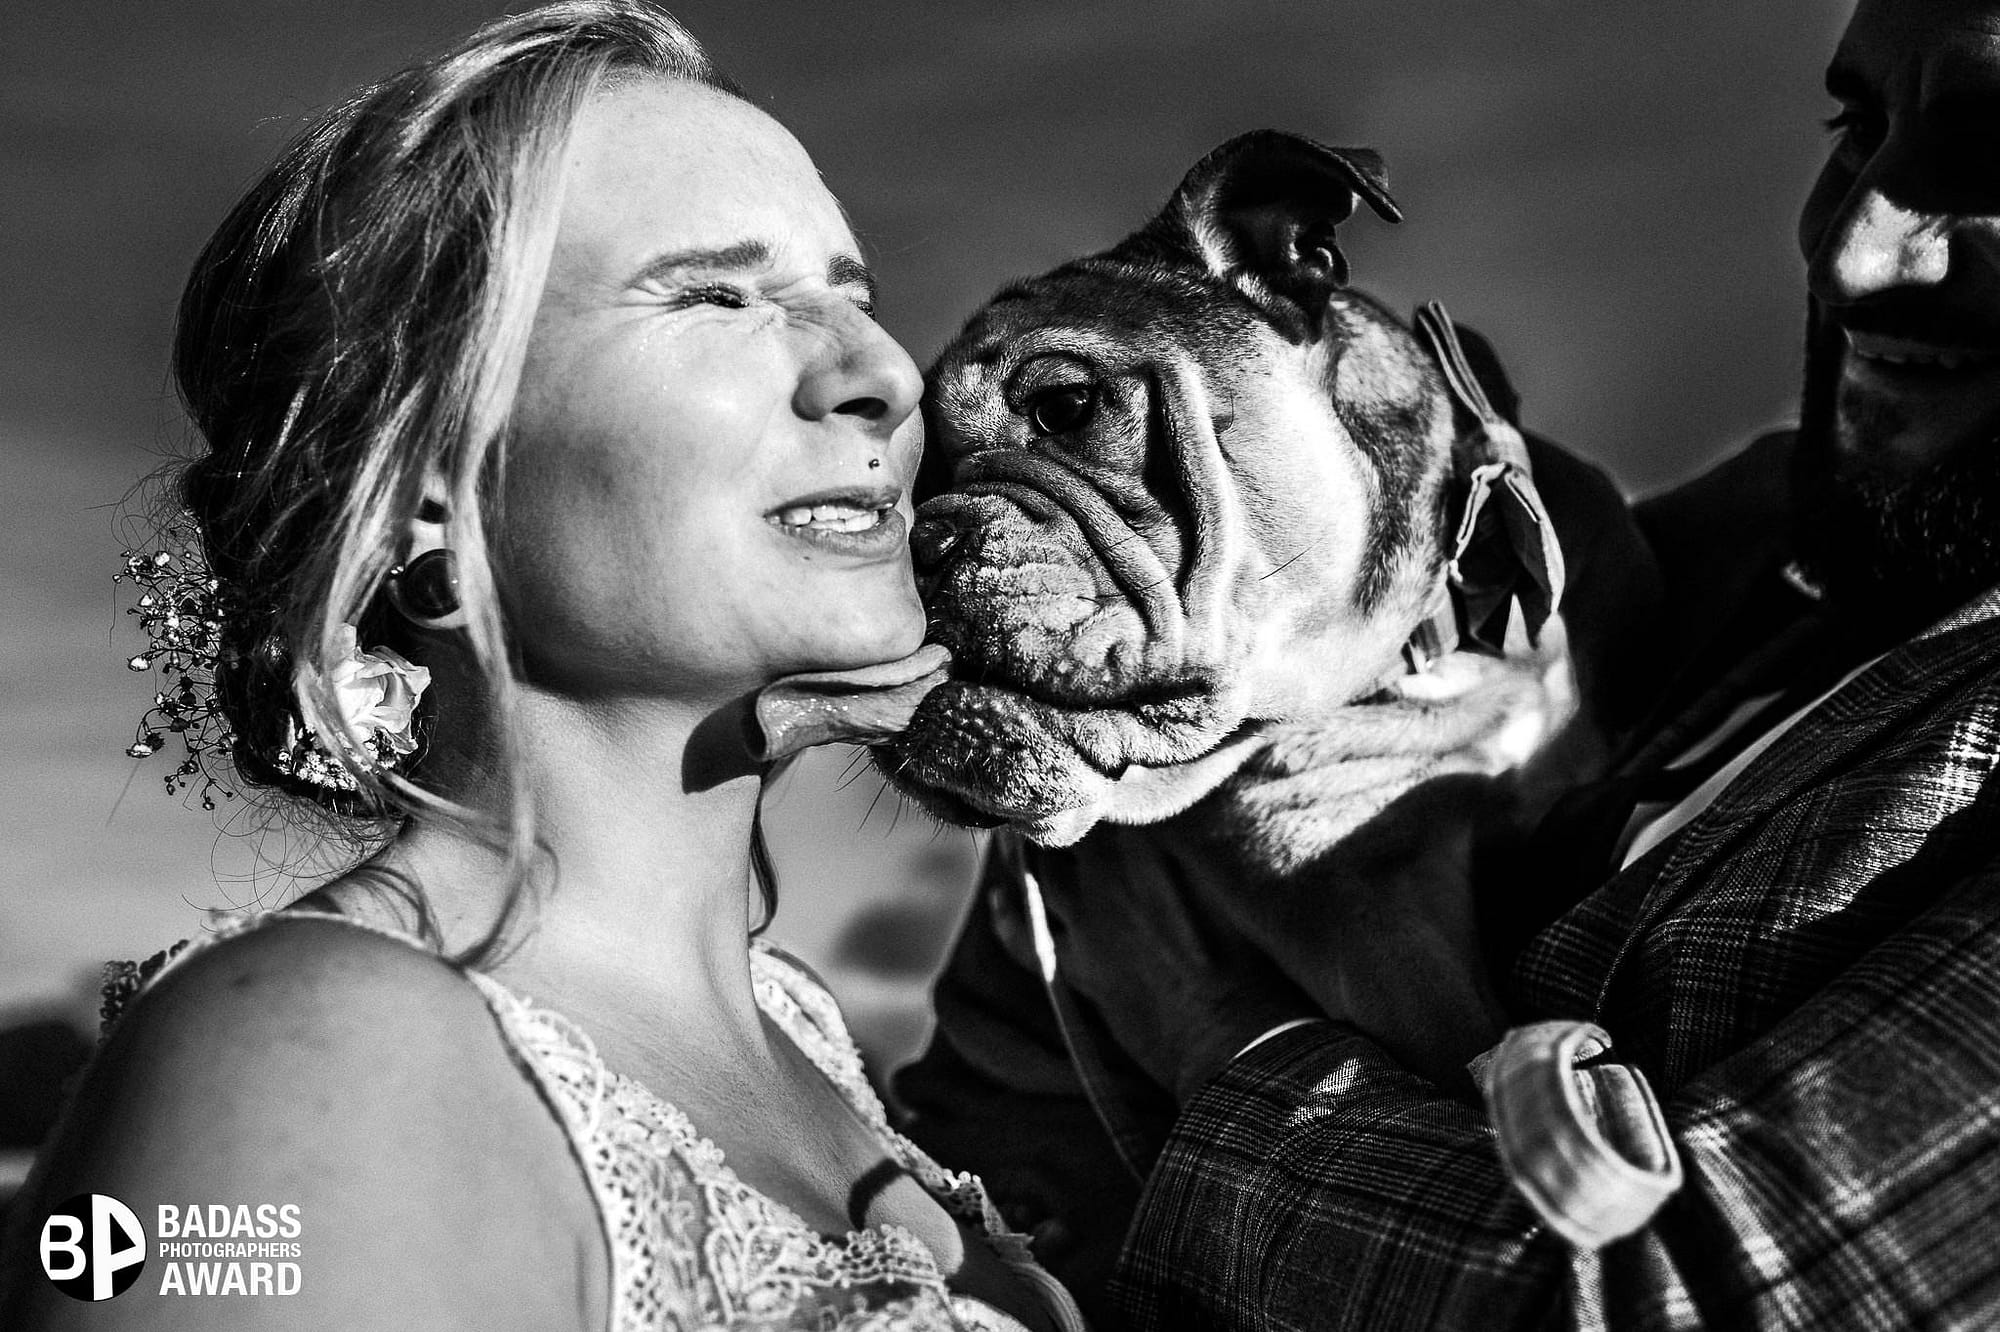 Braut wird von ihrer Bulldogge durchs Gesicht geleckt - Gewinnerbild Badass Award